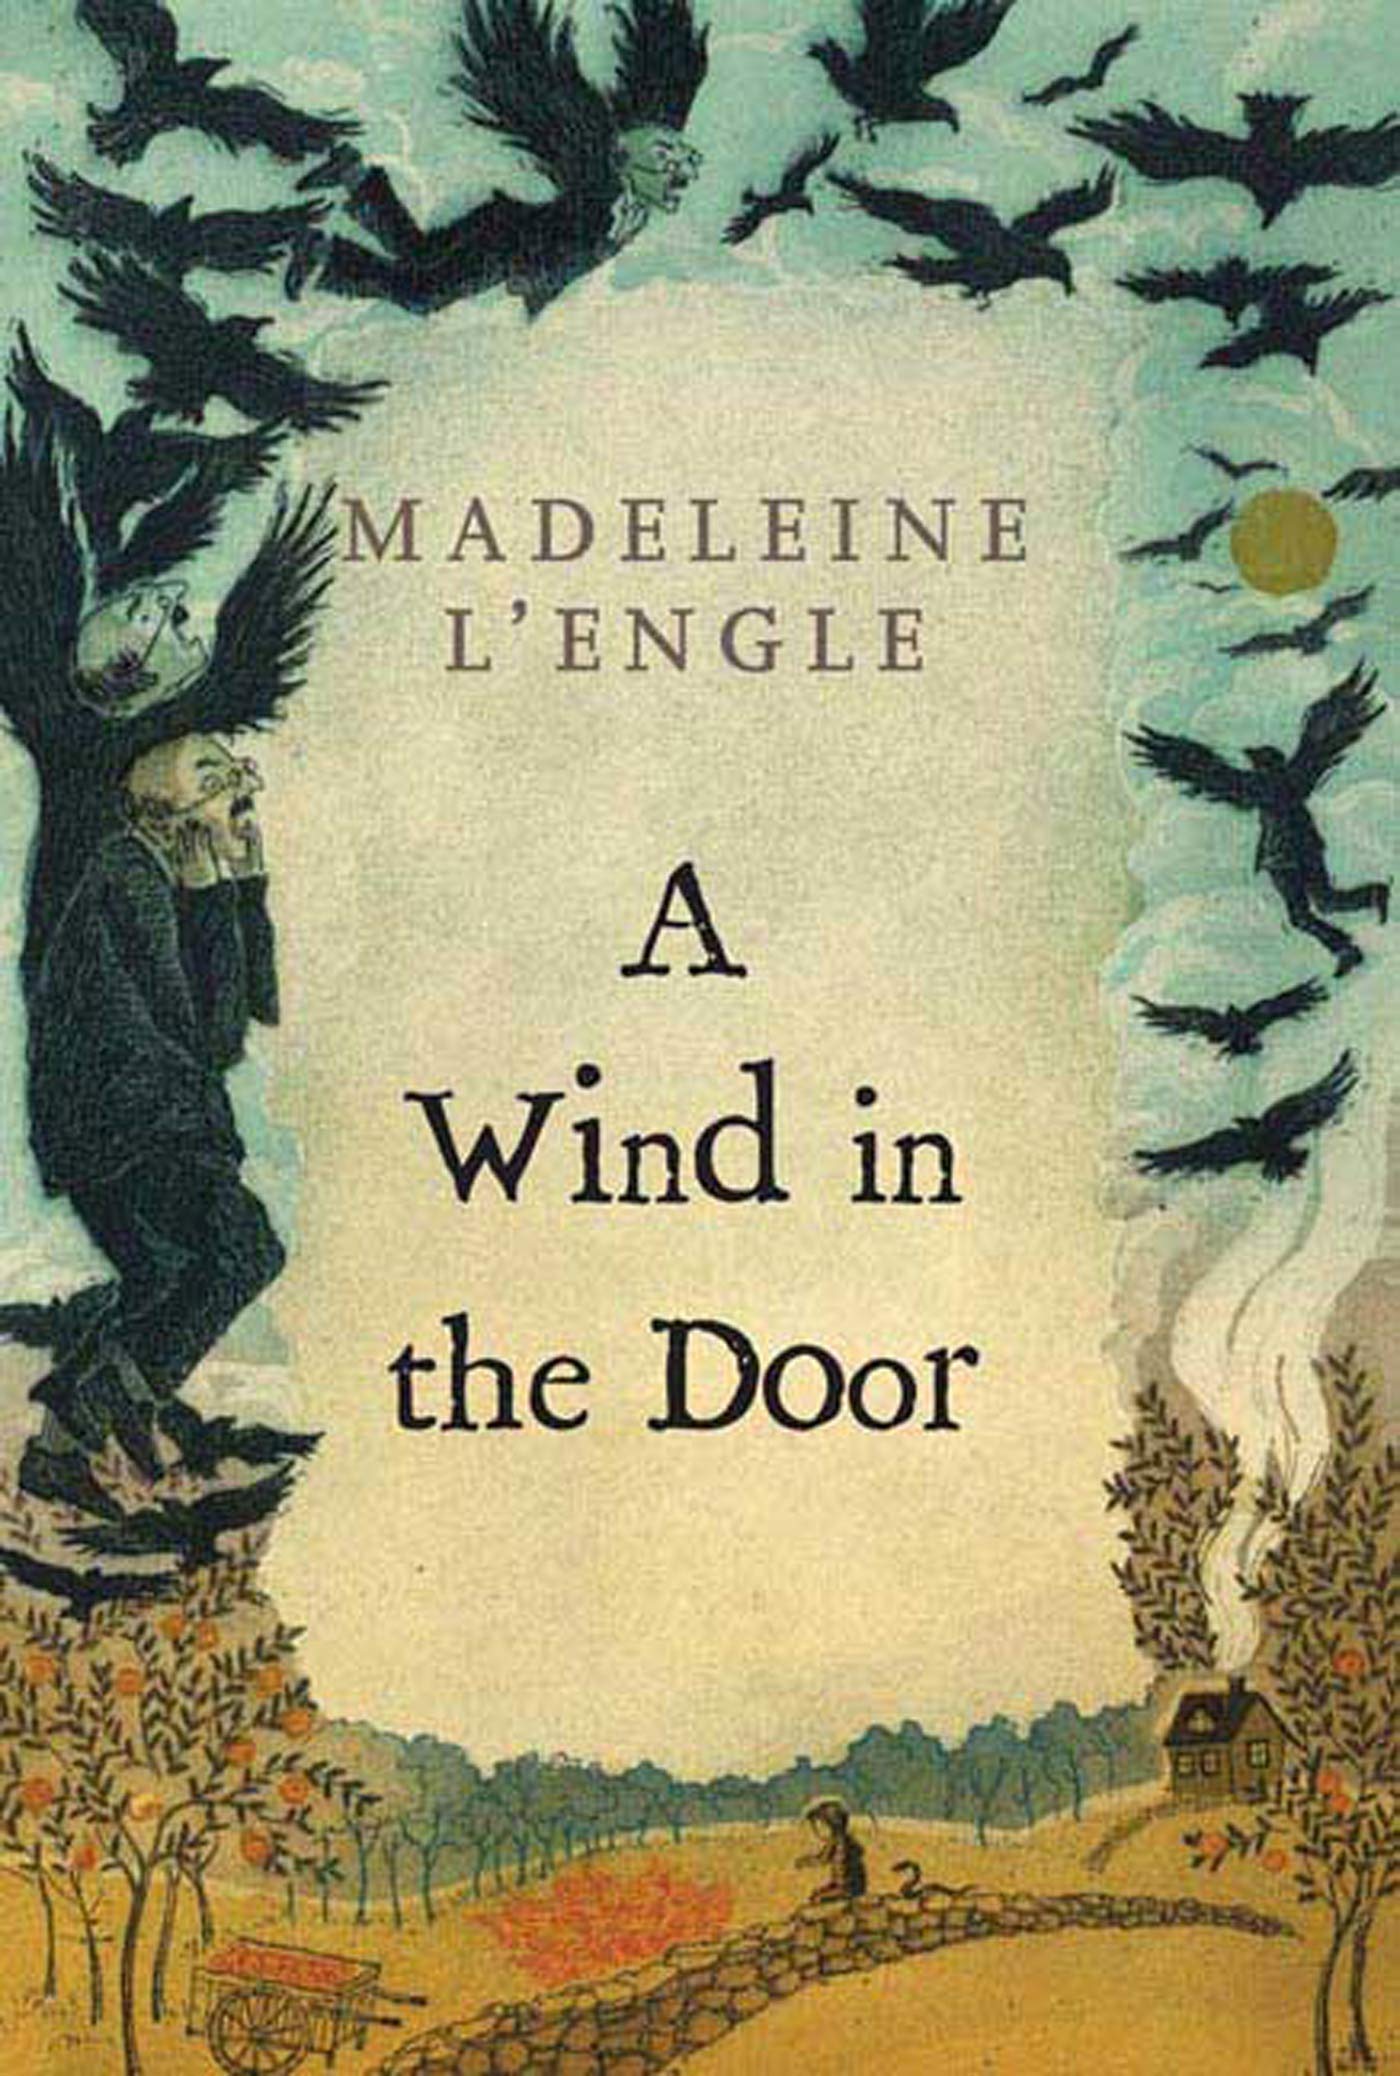 Wind in the Door